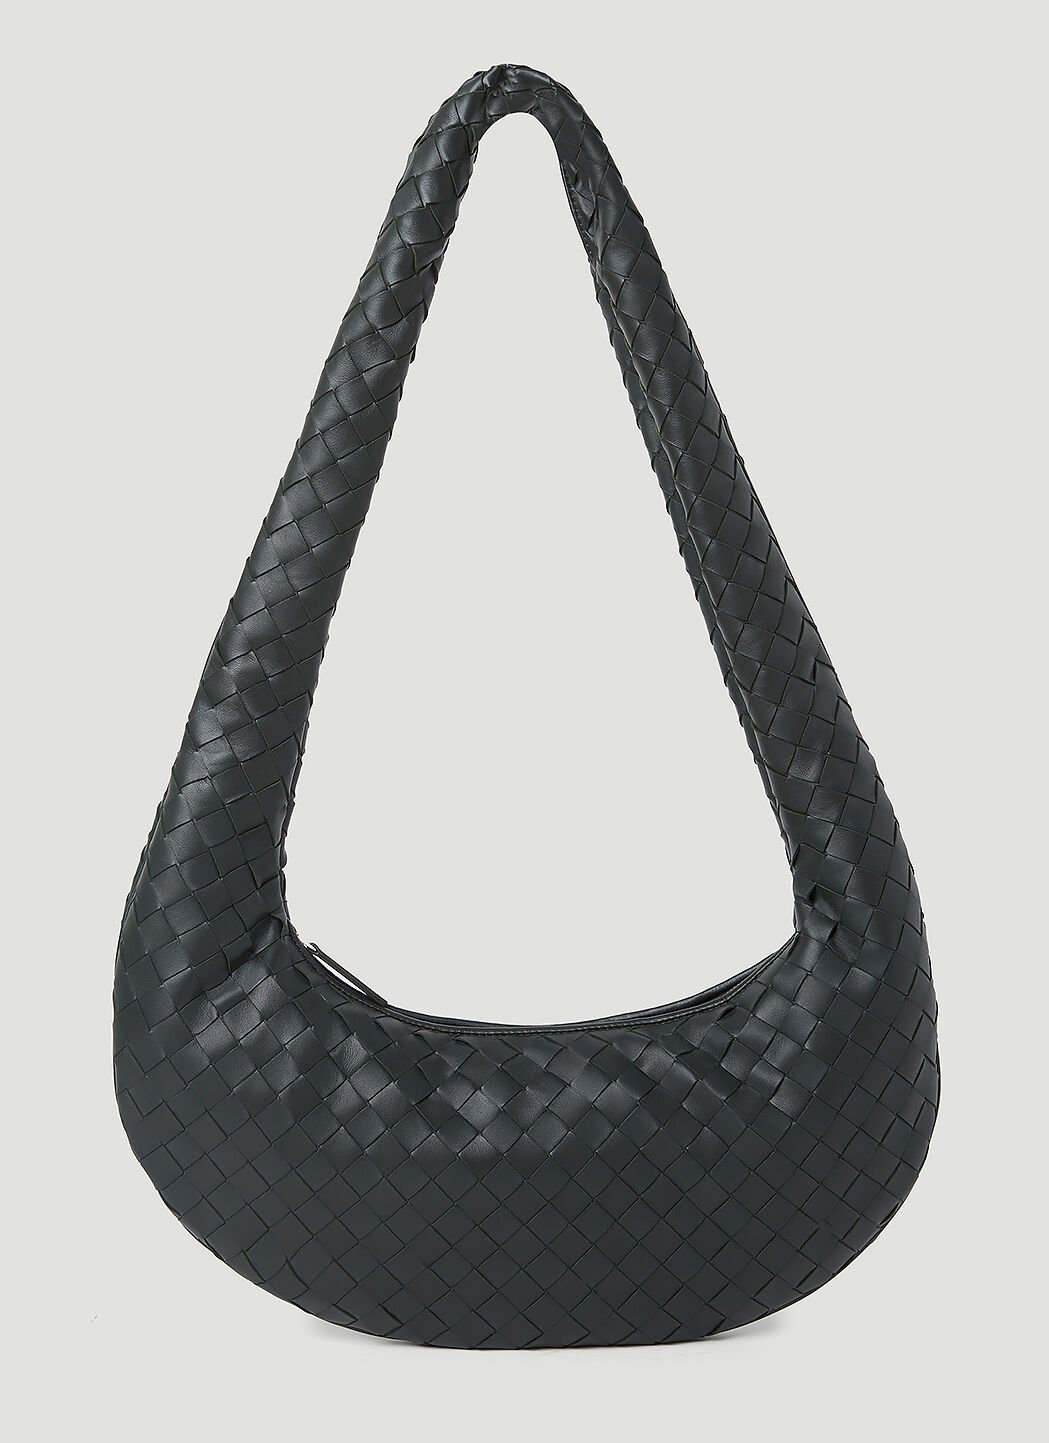 Bottega Veneta Intrecciato Leather Crossbody Bag Black bov0155010